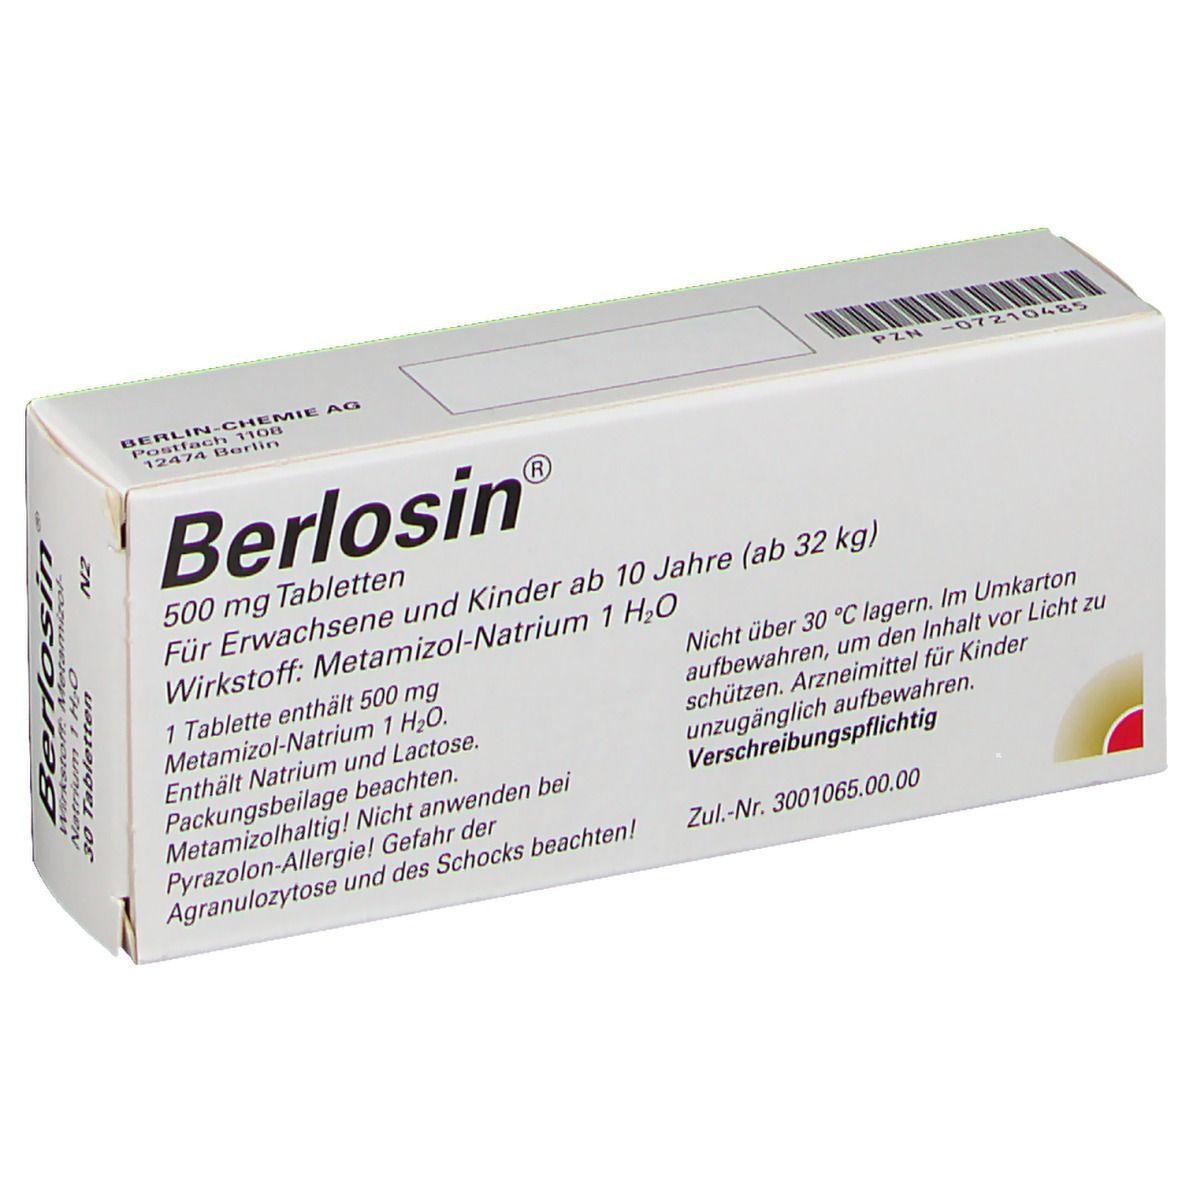 Berlosin® 500 mg